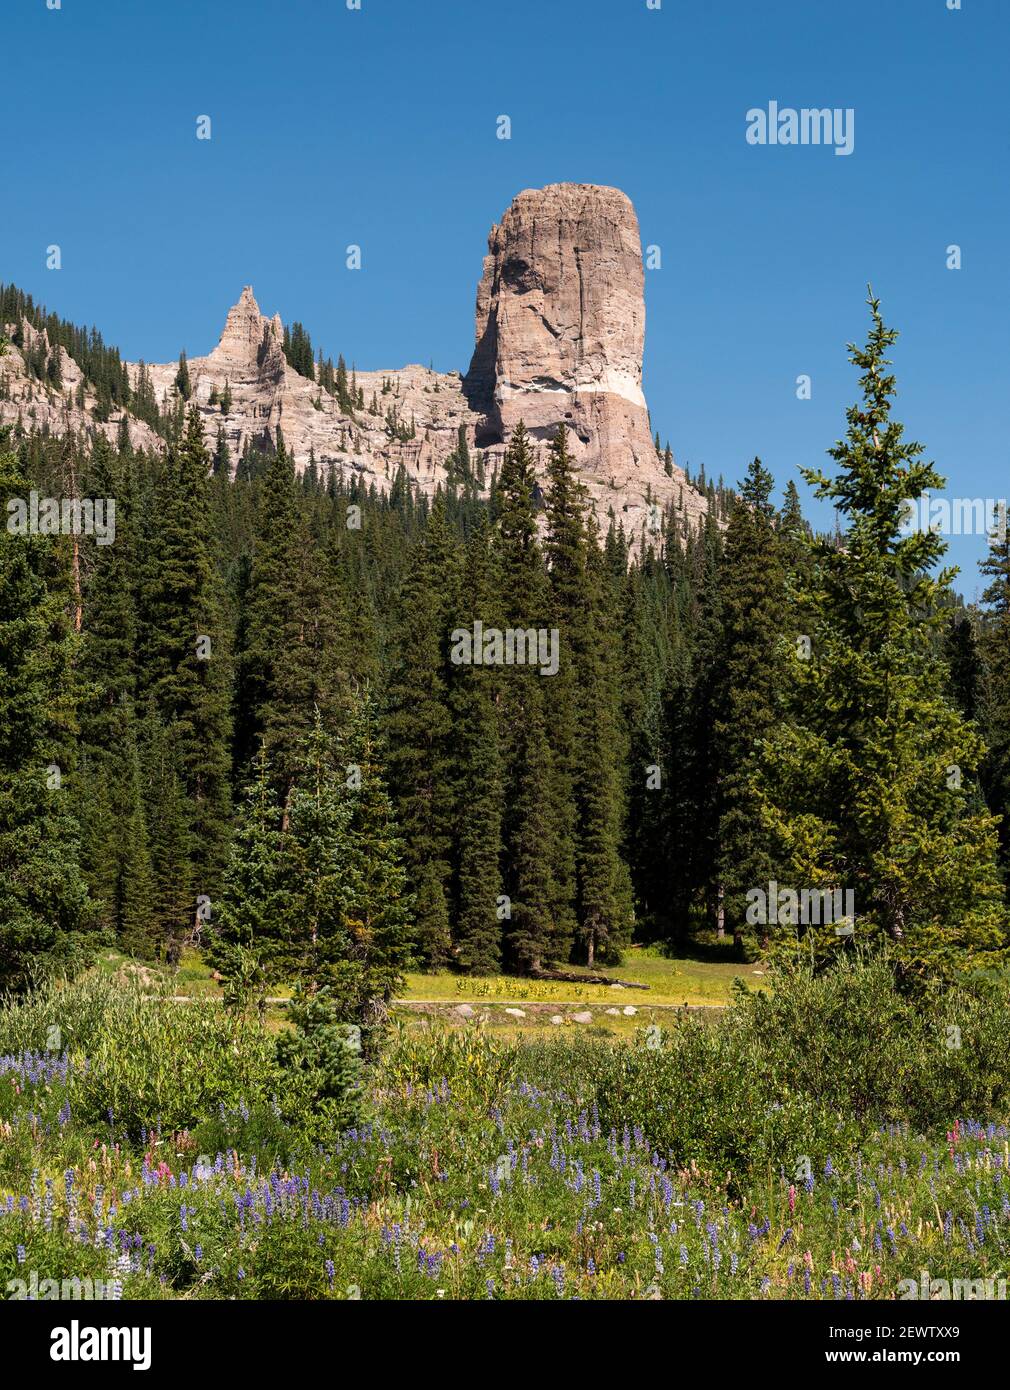 Spettacolare Chimney Rock da 11,781 piedi (3,591 metri) nel Colorado sudoccidentale. Vista dalla biforcazione occidentale della valle del fiume Cimarron. Foto Stock